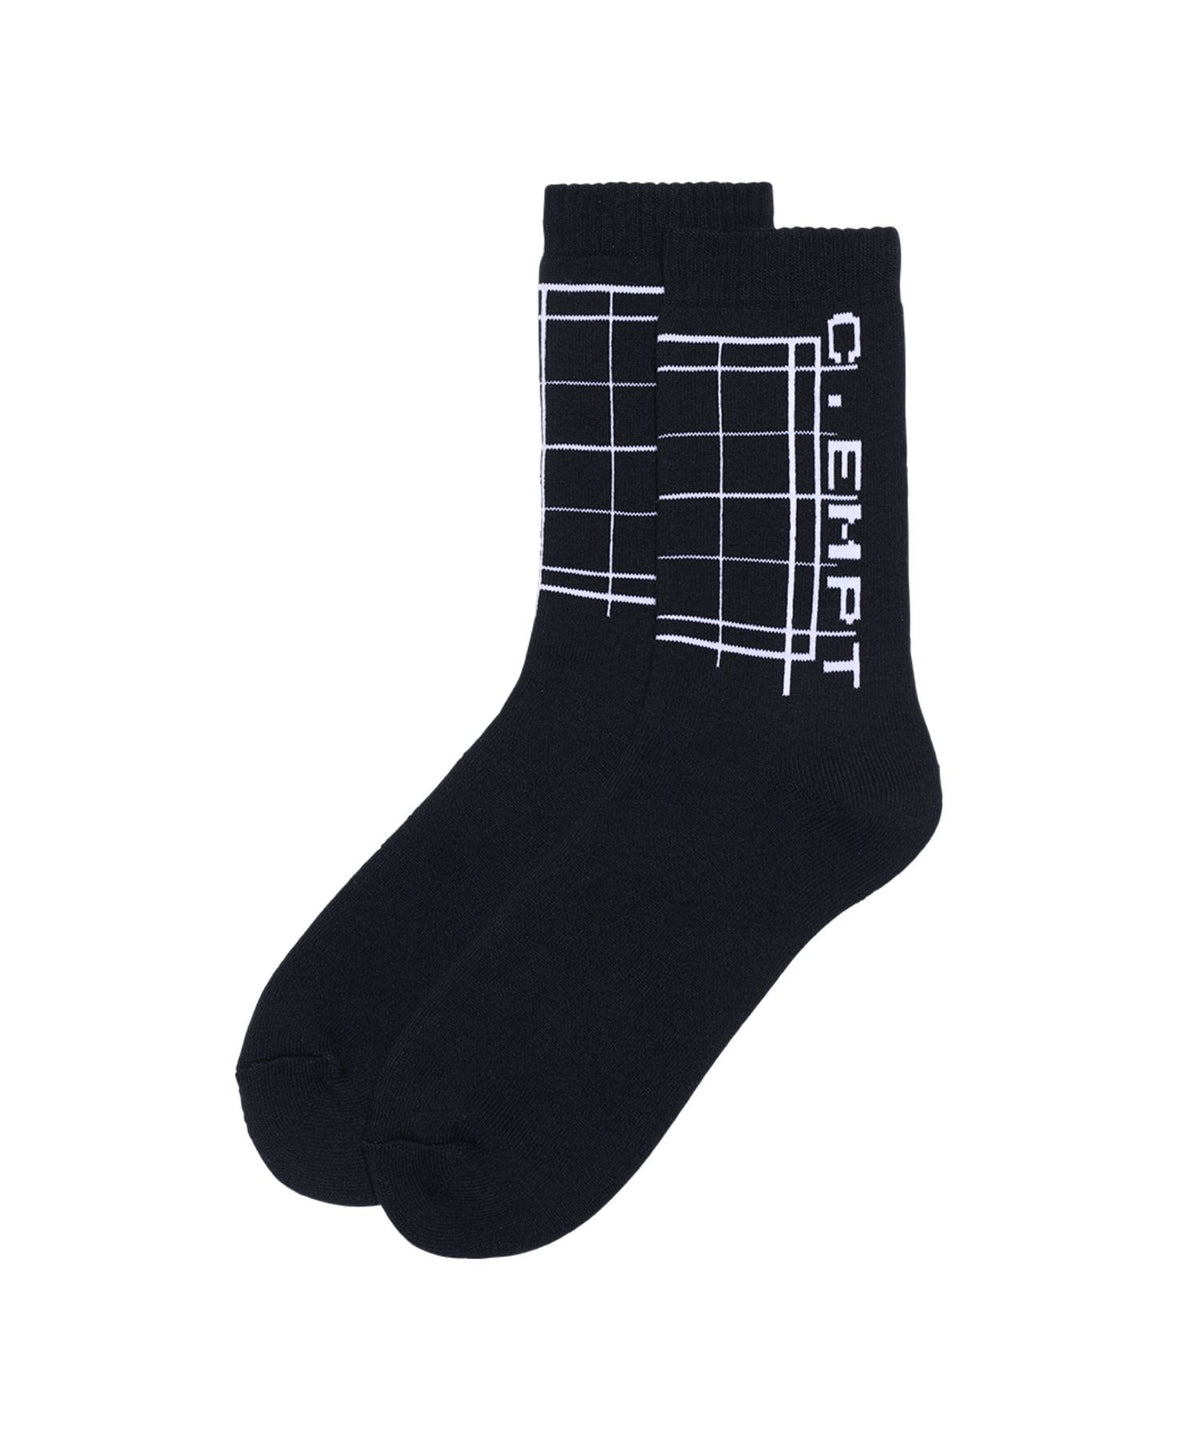 C.EMPT Socks